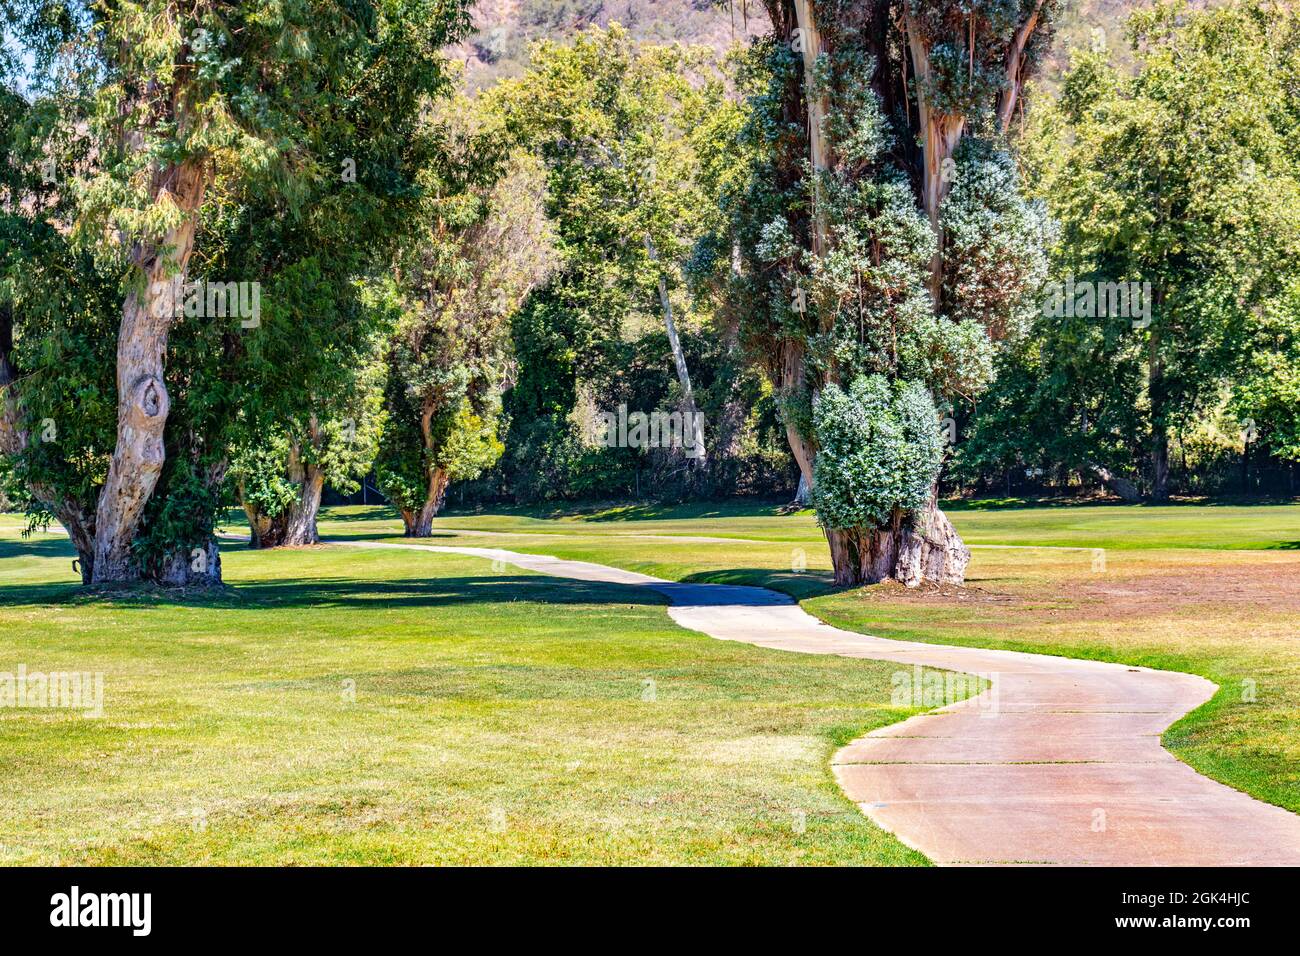 Golf cart percorso che si snoda attraverso gli alberi su un campo da golf Foto Stock